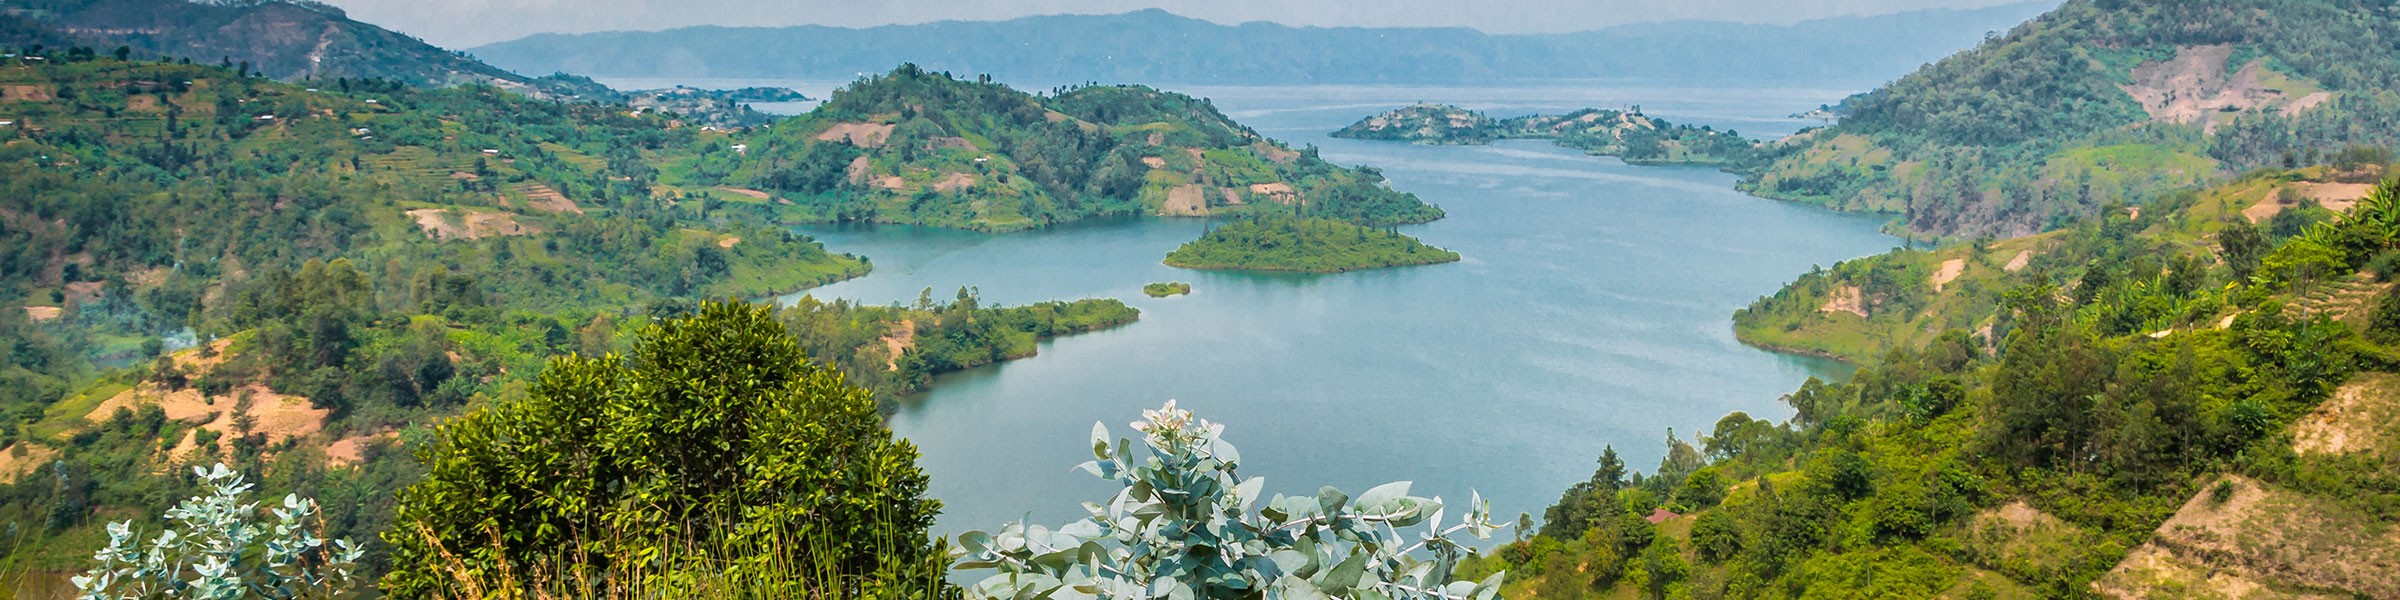 Panoramic view of Lake Kivu, Rwanda